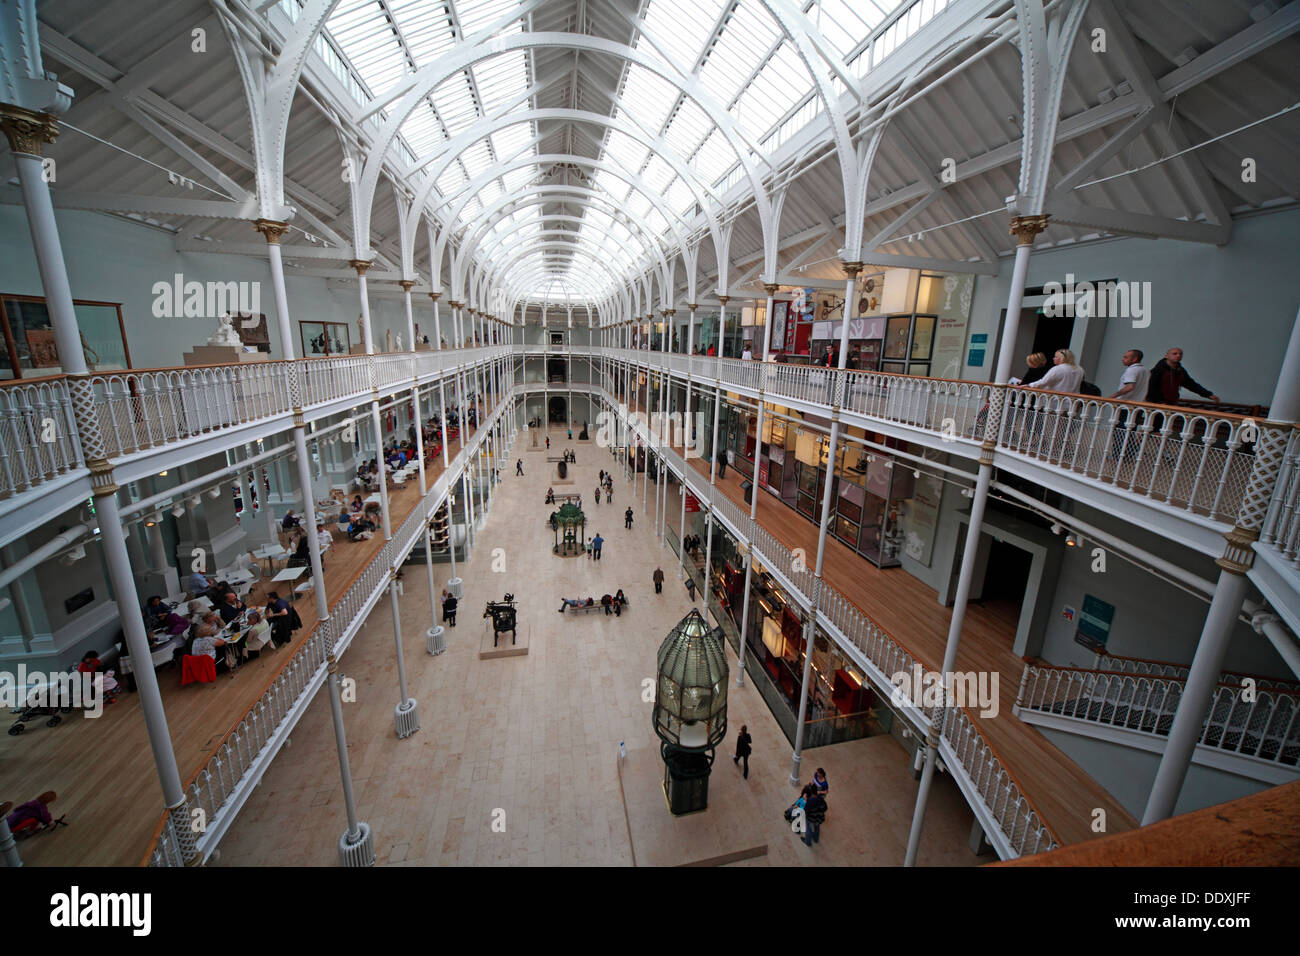 Musée national d'Écosse, de l'intérieur, la ville d'Edimbourg St Chambers UK Scotland EH1 1JF Banque D'Images